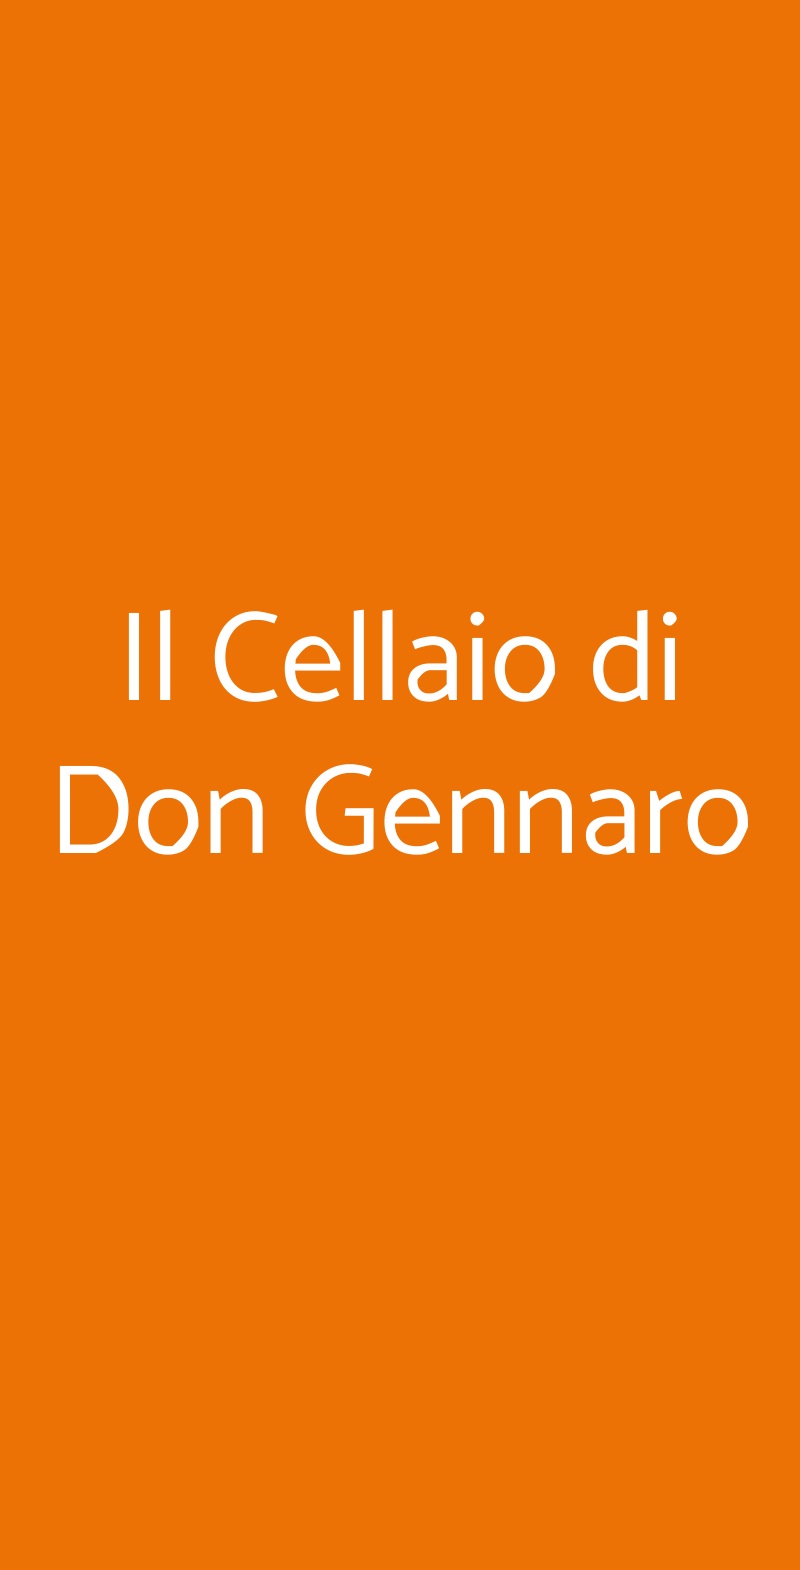 Il Cellaio di Don Gennaro Vico Equense menù 1 pagina